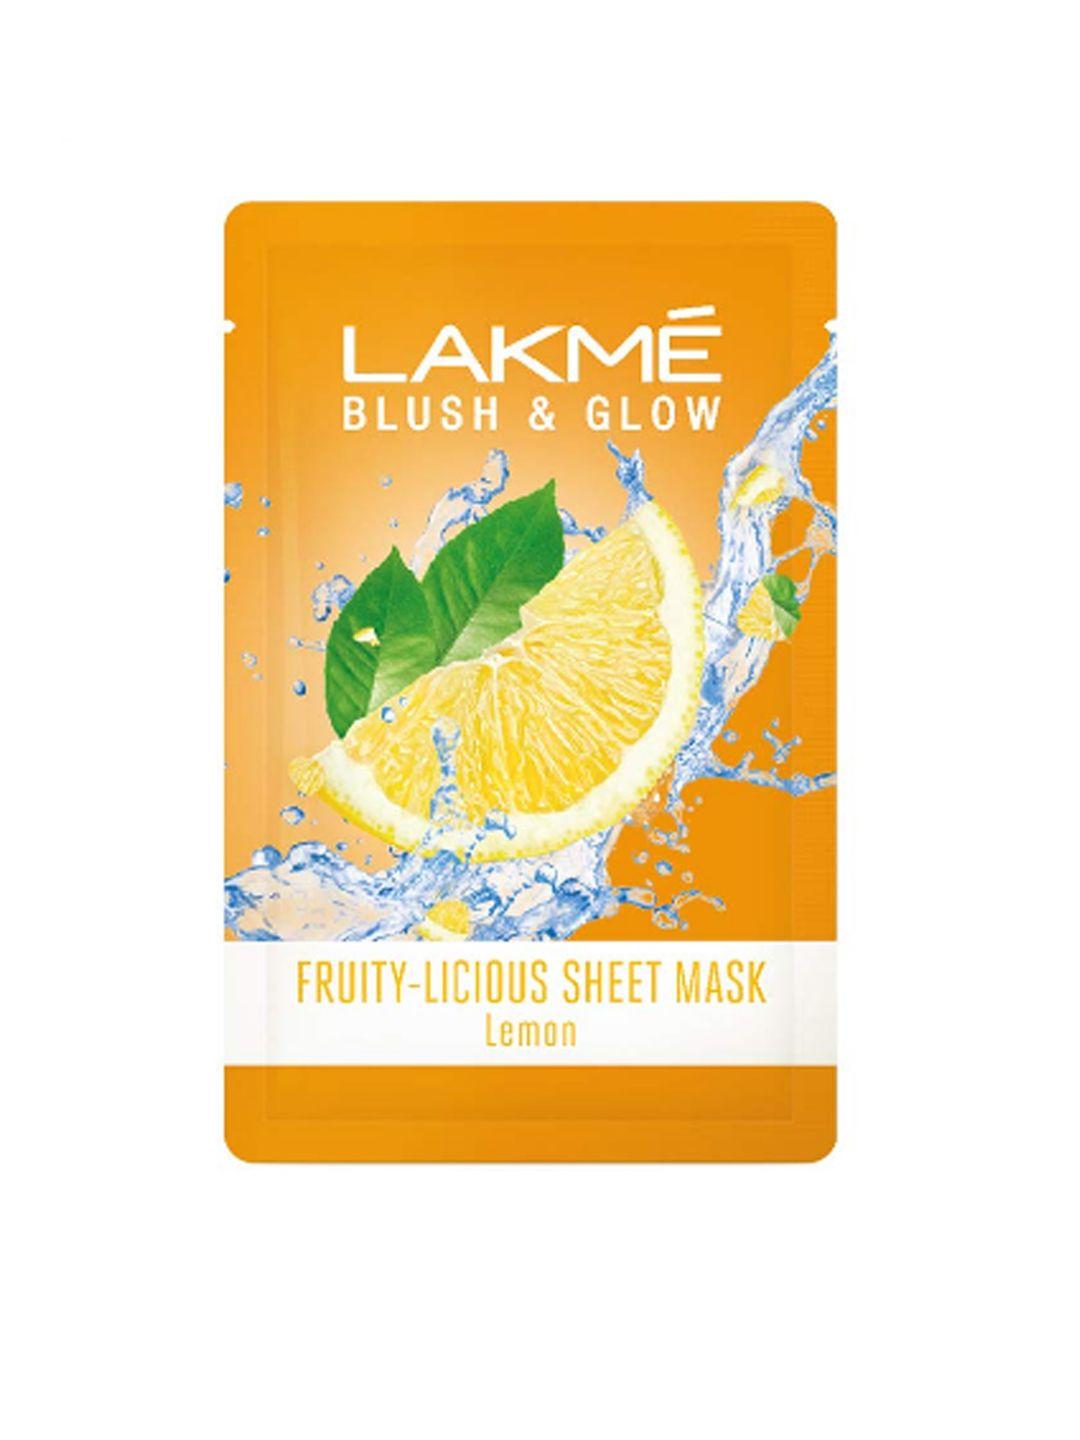 lakme blush & glow lemon sheet mask 25 ml